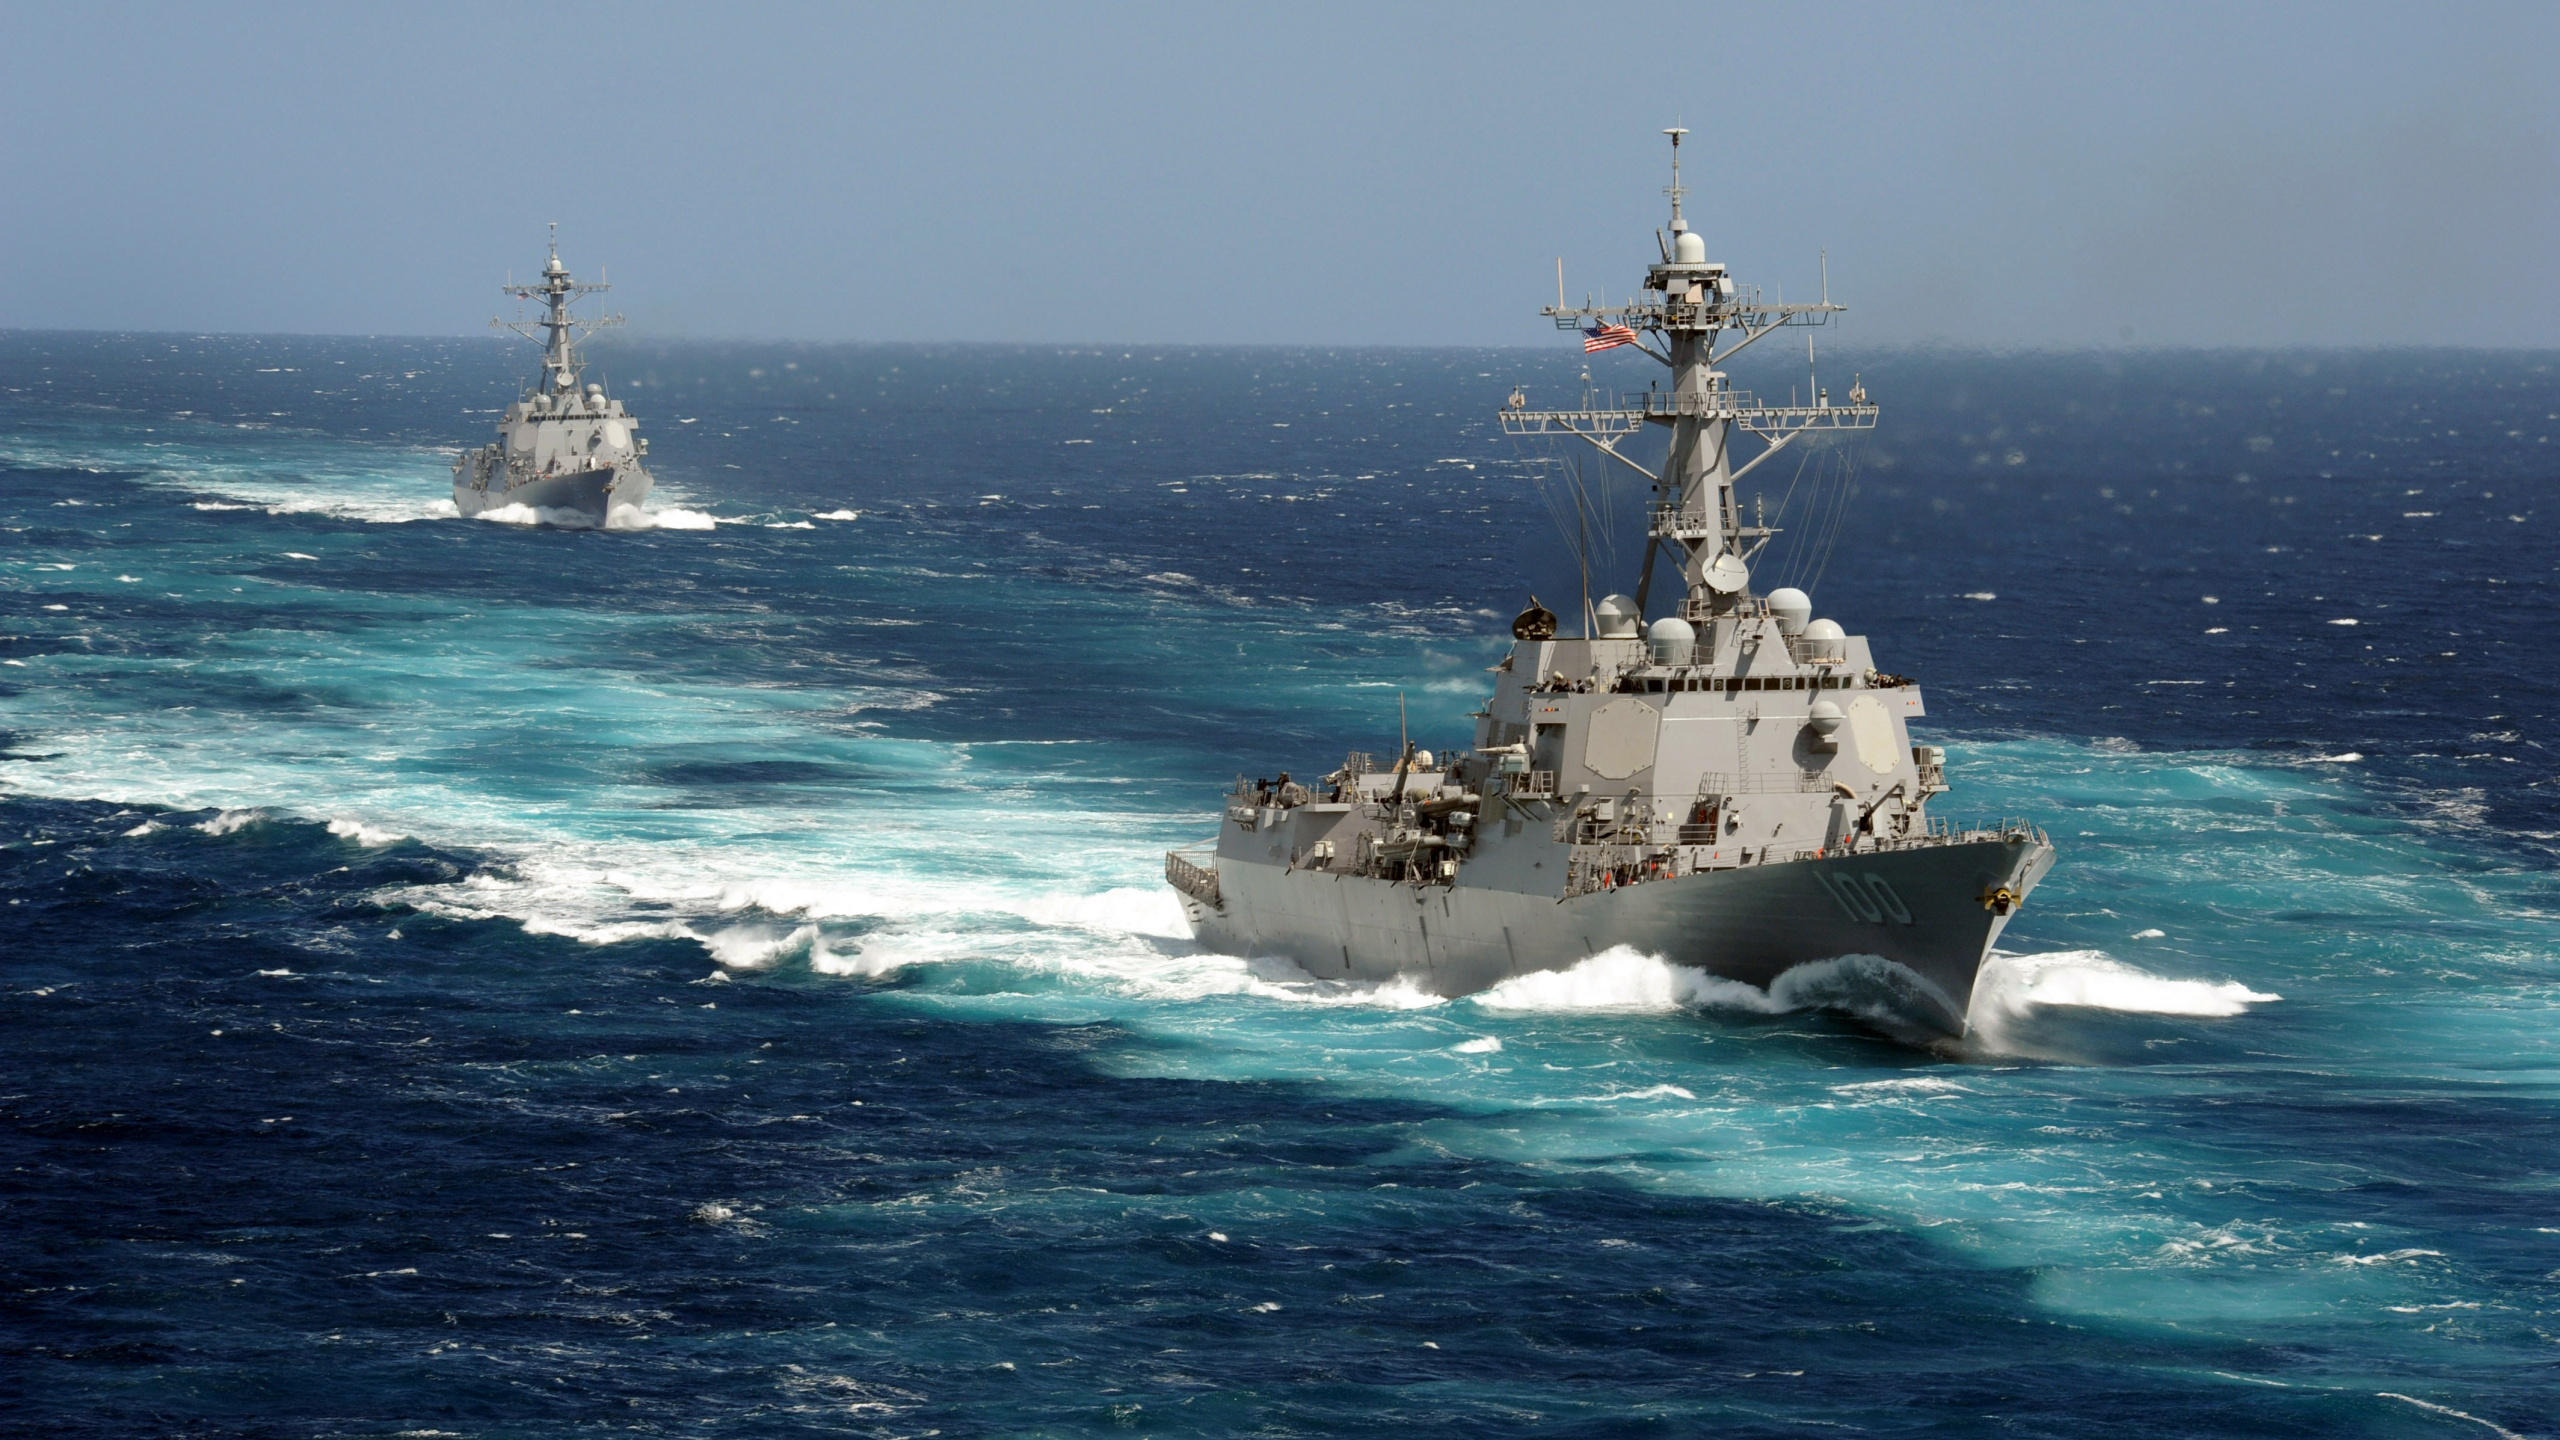 United States Navy, Marine, Marine-Schiff, Kriegsschiff, Schiff. Wallpaper in 2560x1440 Resolution